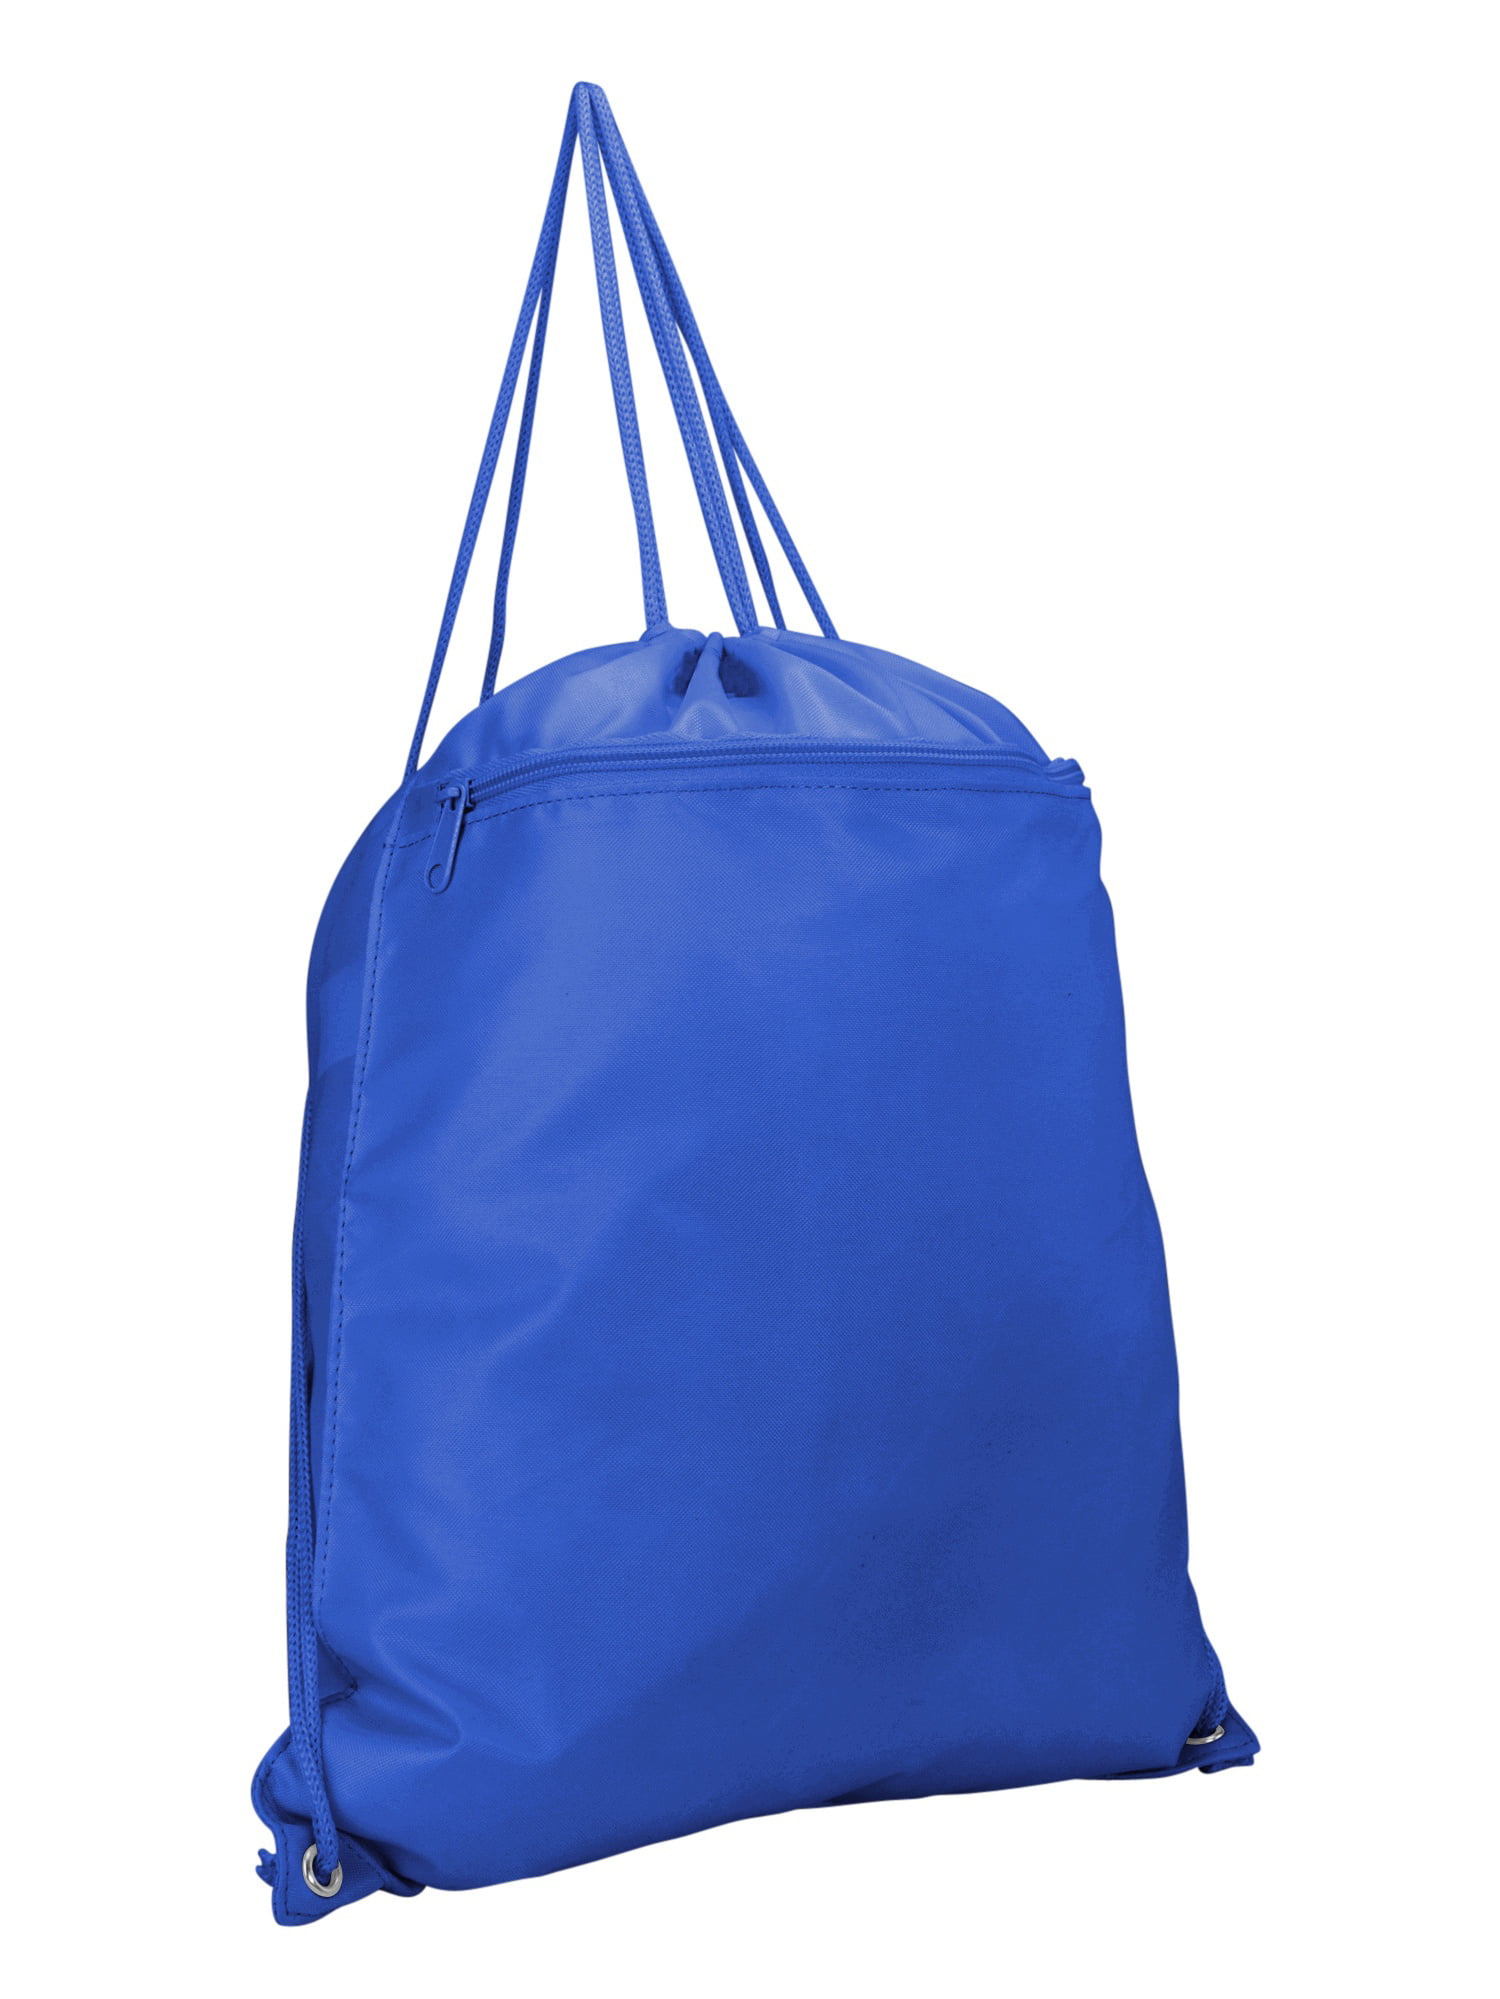 DALIX Sock Pack Drawstring Backpack Sack Bag in Royal Blue 